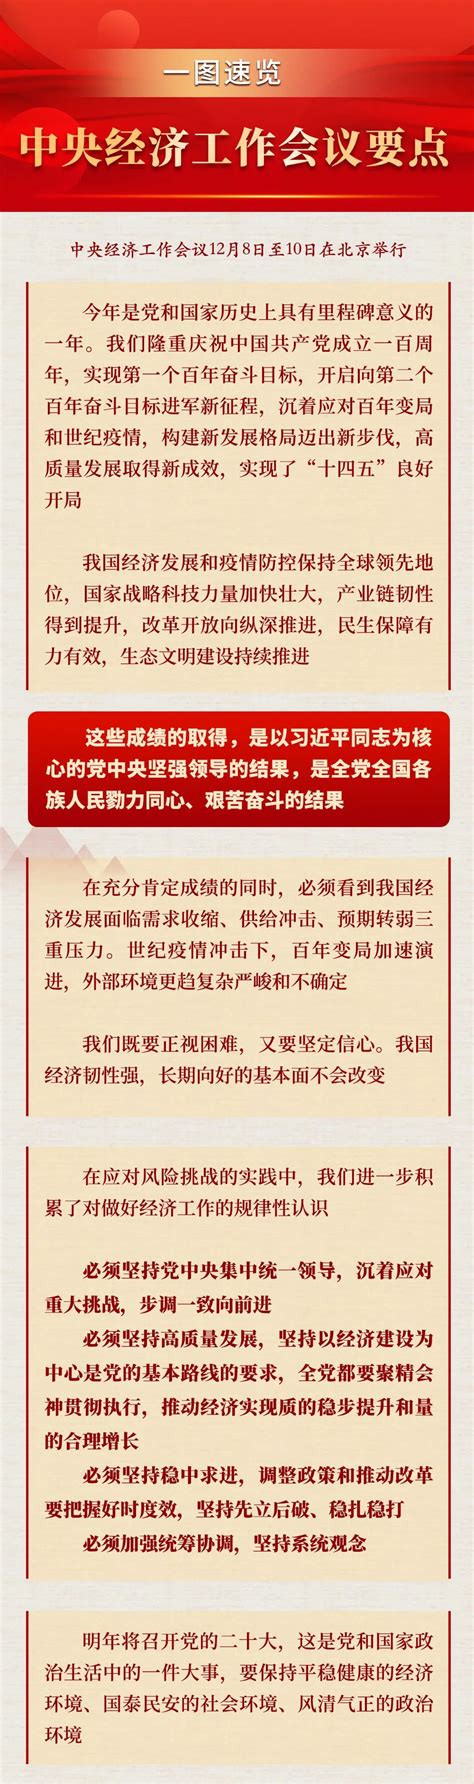 一图速览中央经济工作会议要点-北京通信信息协会